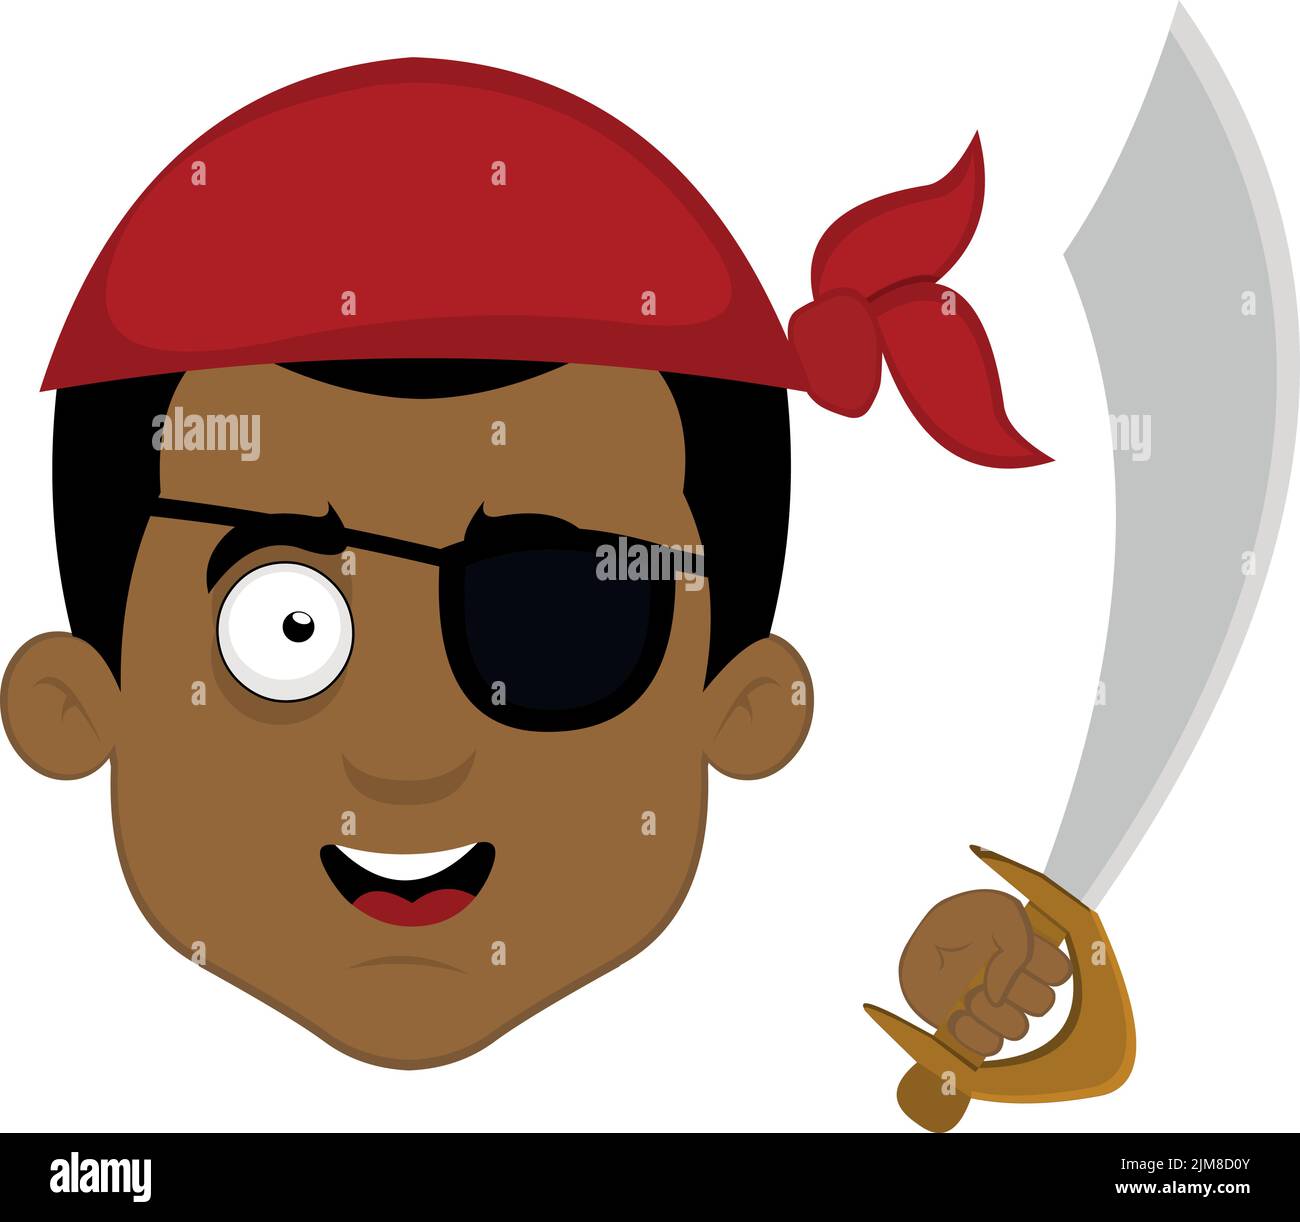 Vektor-Illustration des Gesichts eines Cartoon-Piraten, mit einem Kopftuch, einem Augenfleck und einem Schwert in der Hand Stock Vektor